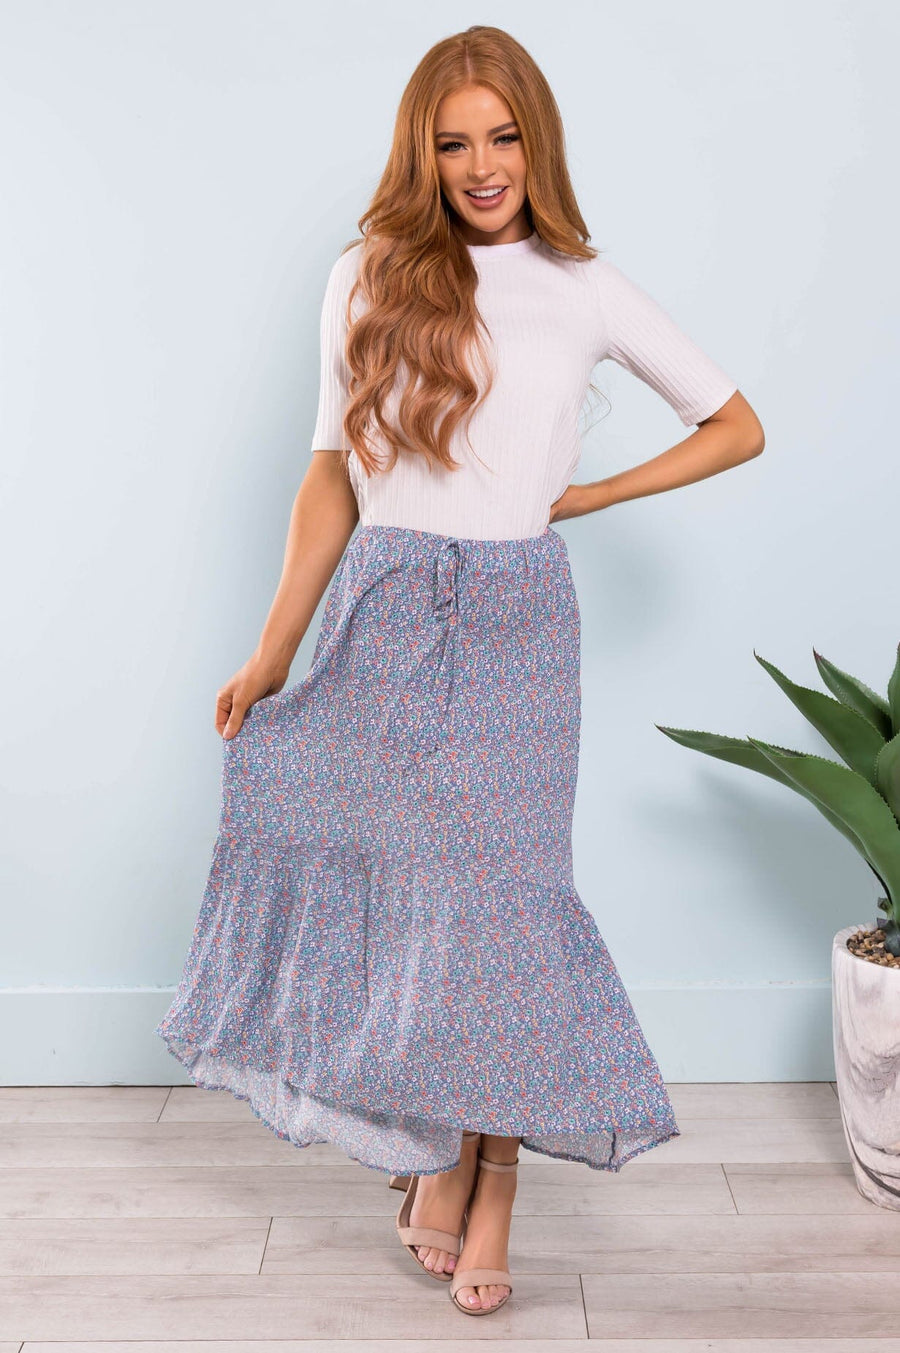 A New Bloom Modest Skirt